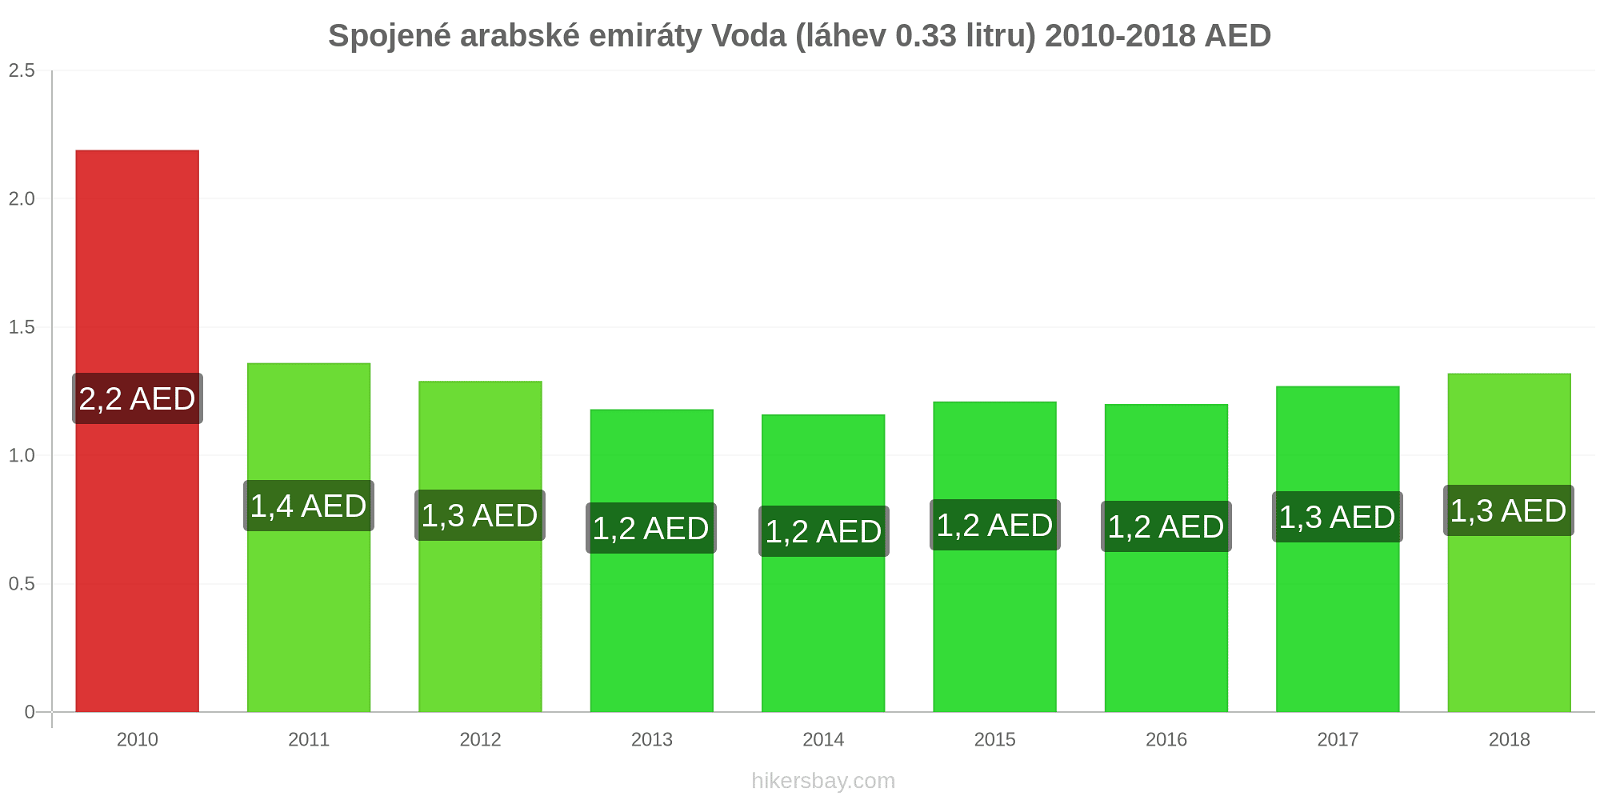 Spojené arabské emiráty změny cen Voda (láhev 0.33 litru) hikersbay.com